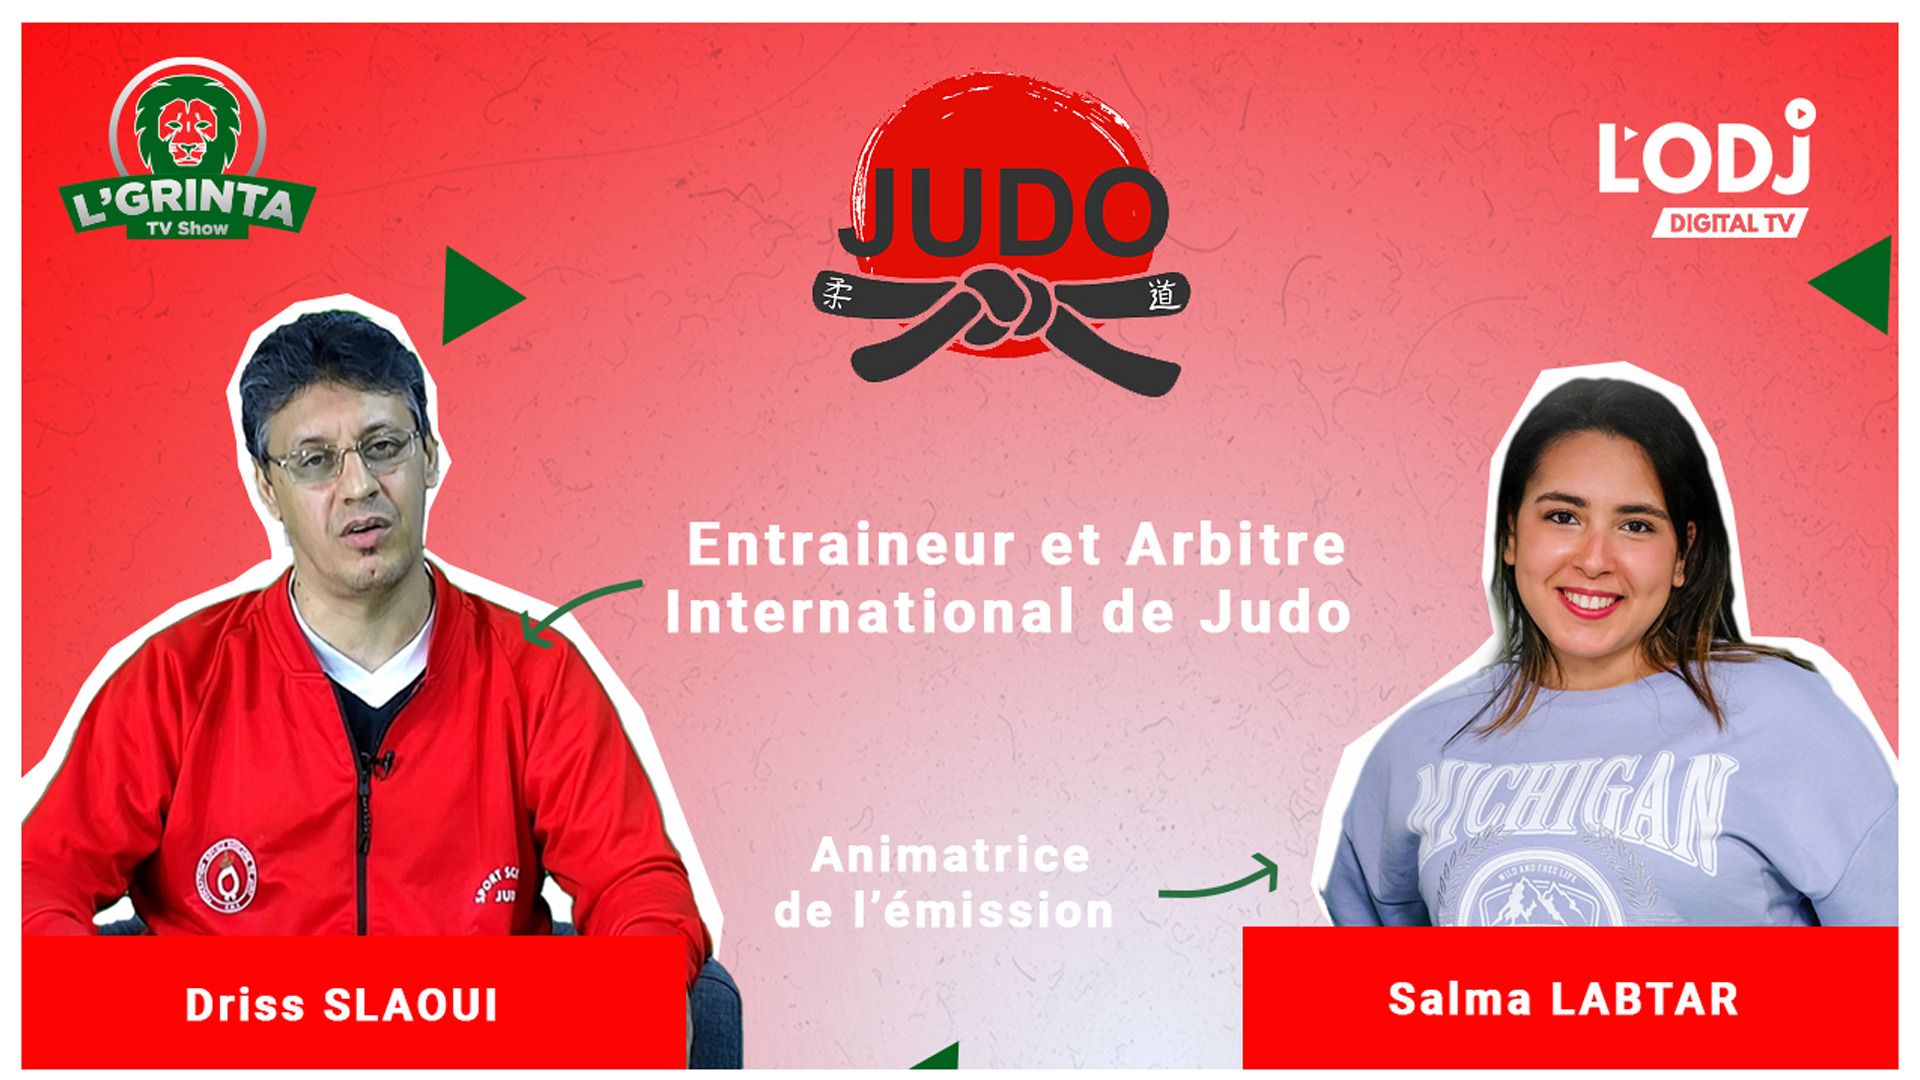 LGRINTA reçoit Driss Saloui : Champion du judo et entraineur et arbitre international !